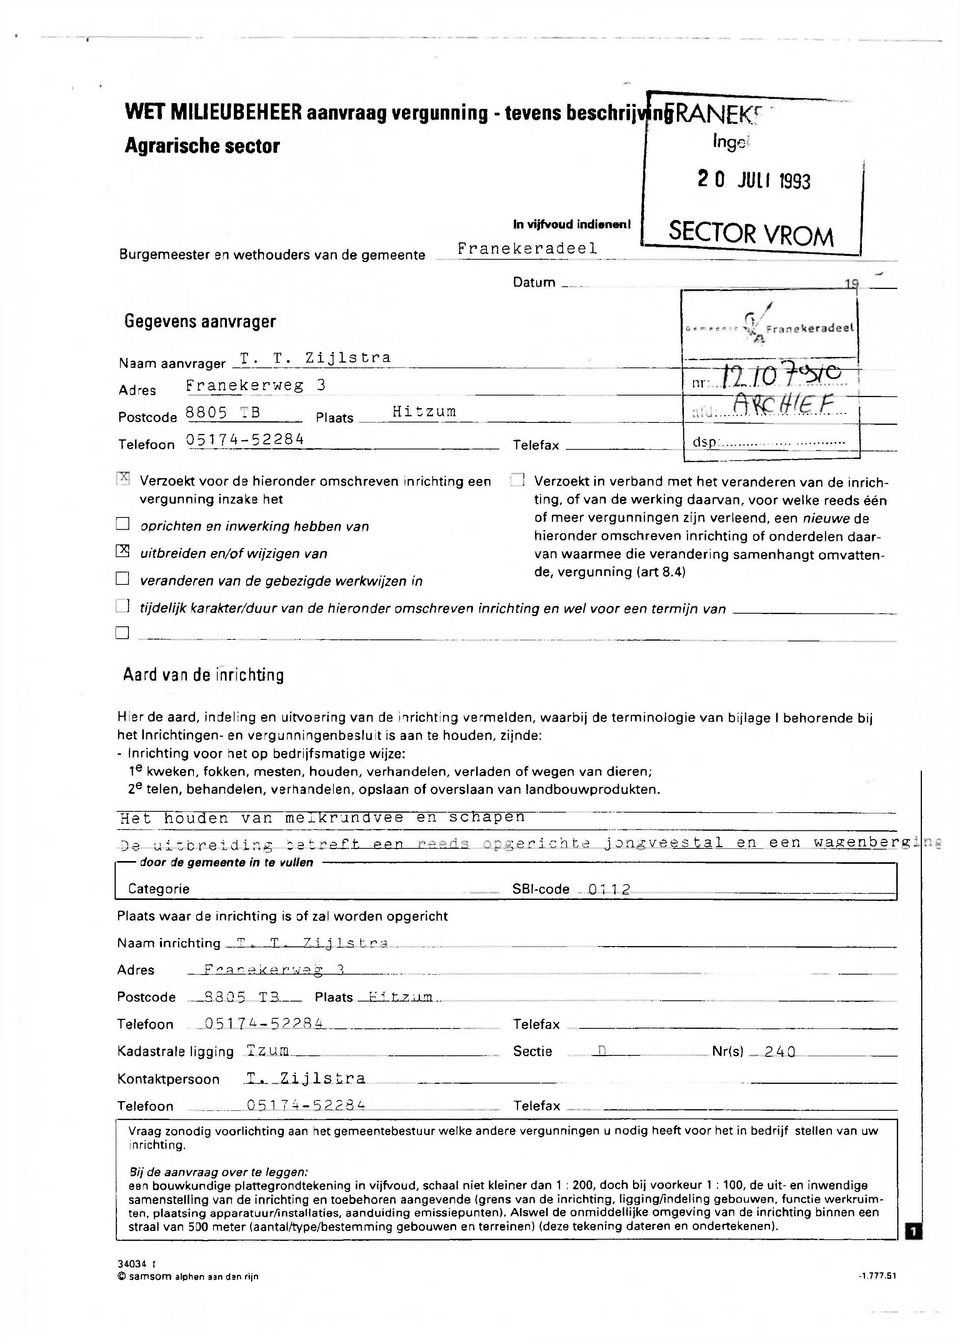 T. Zijlstra Adres Franekerweg 3 Postcode 8805 - B Telefoon 05174-52284 Plaats Hitzura Telefax nr dsp: (2/o'^ve Verzoekt voor de hieronder omschreven inrichting een vergunning inzake het n oprichten